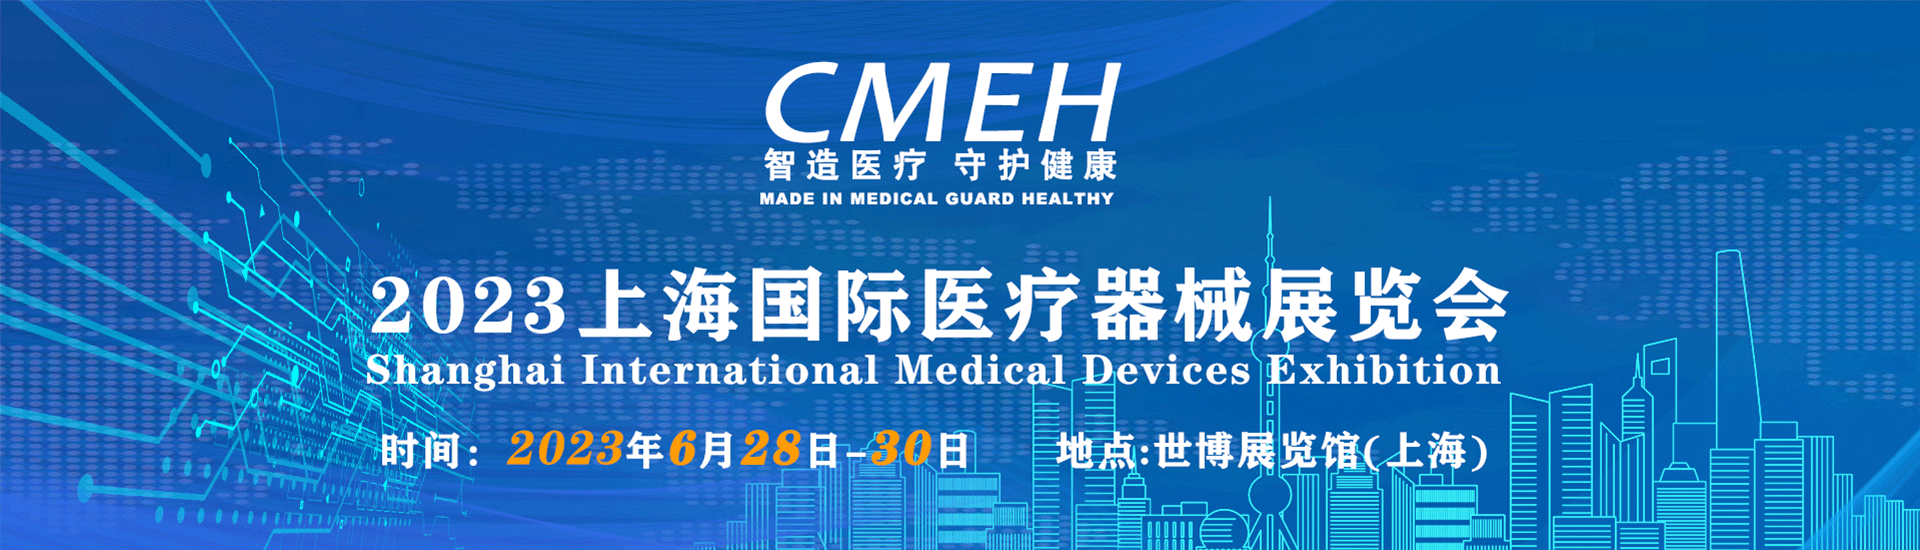 医疗器械展览会2023年、上海、北京、深圳、时间表(持续更新)